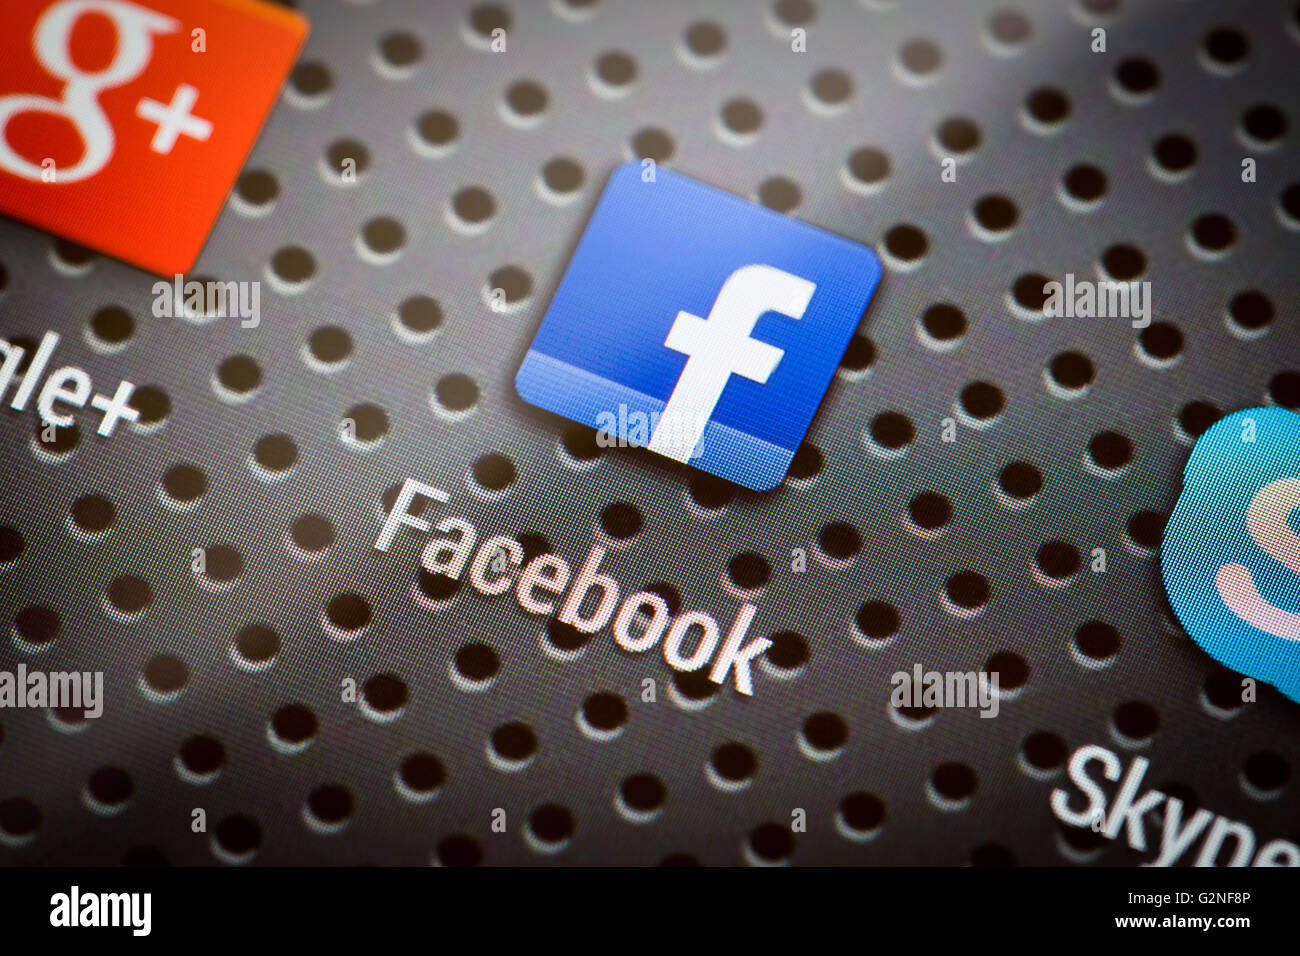 BELCHATOW, Pologne - 10 avril 2014 : photo gros plan de l'icône de Facebook sur l'écran du téléphone mobile. Réseau social populaire. Banque D'Images